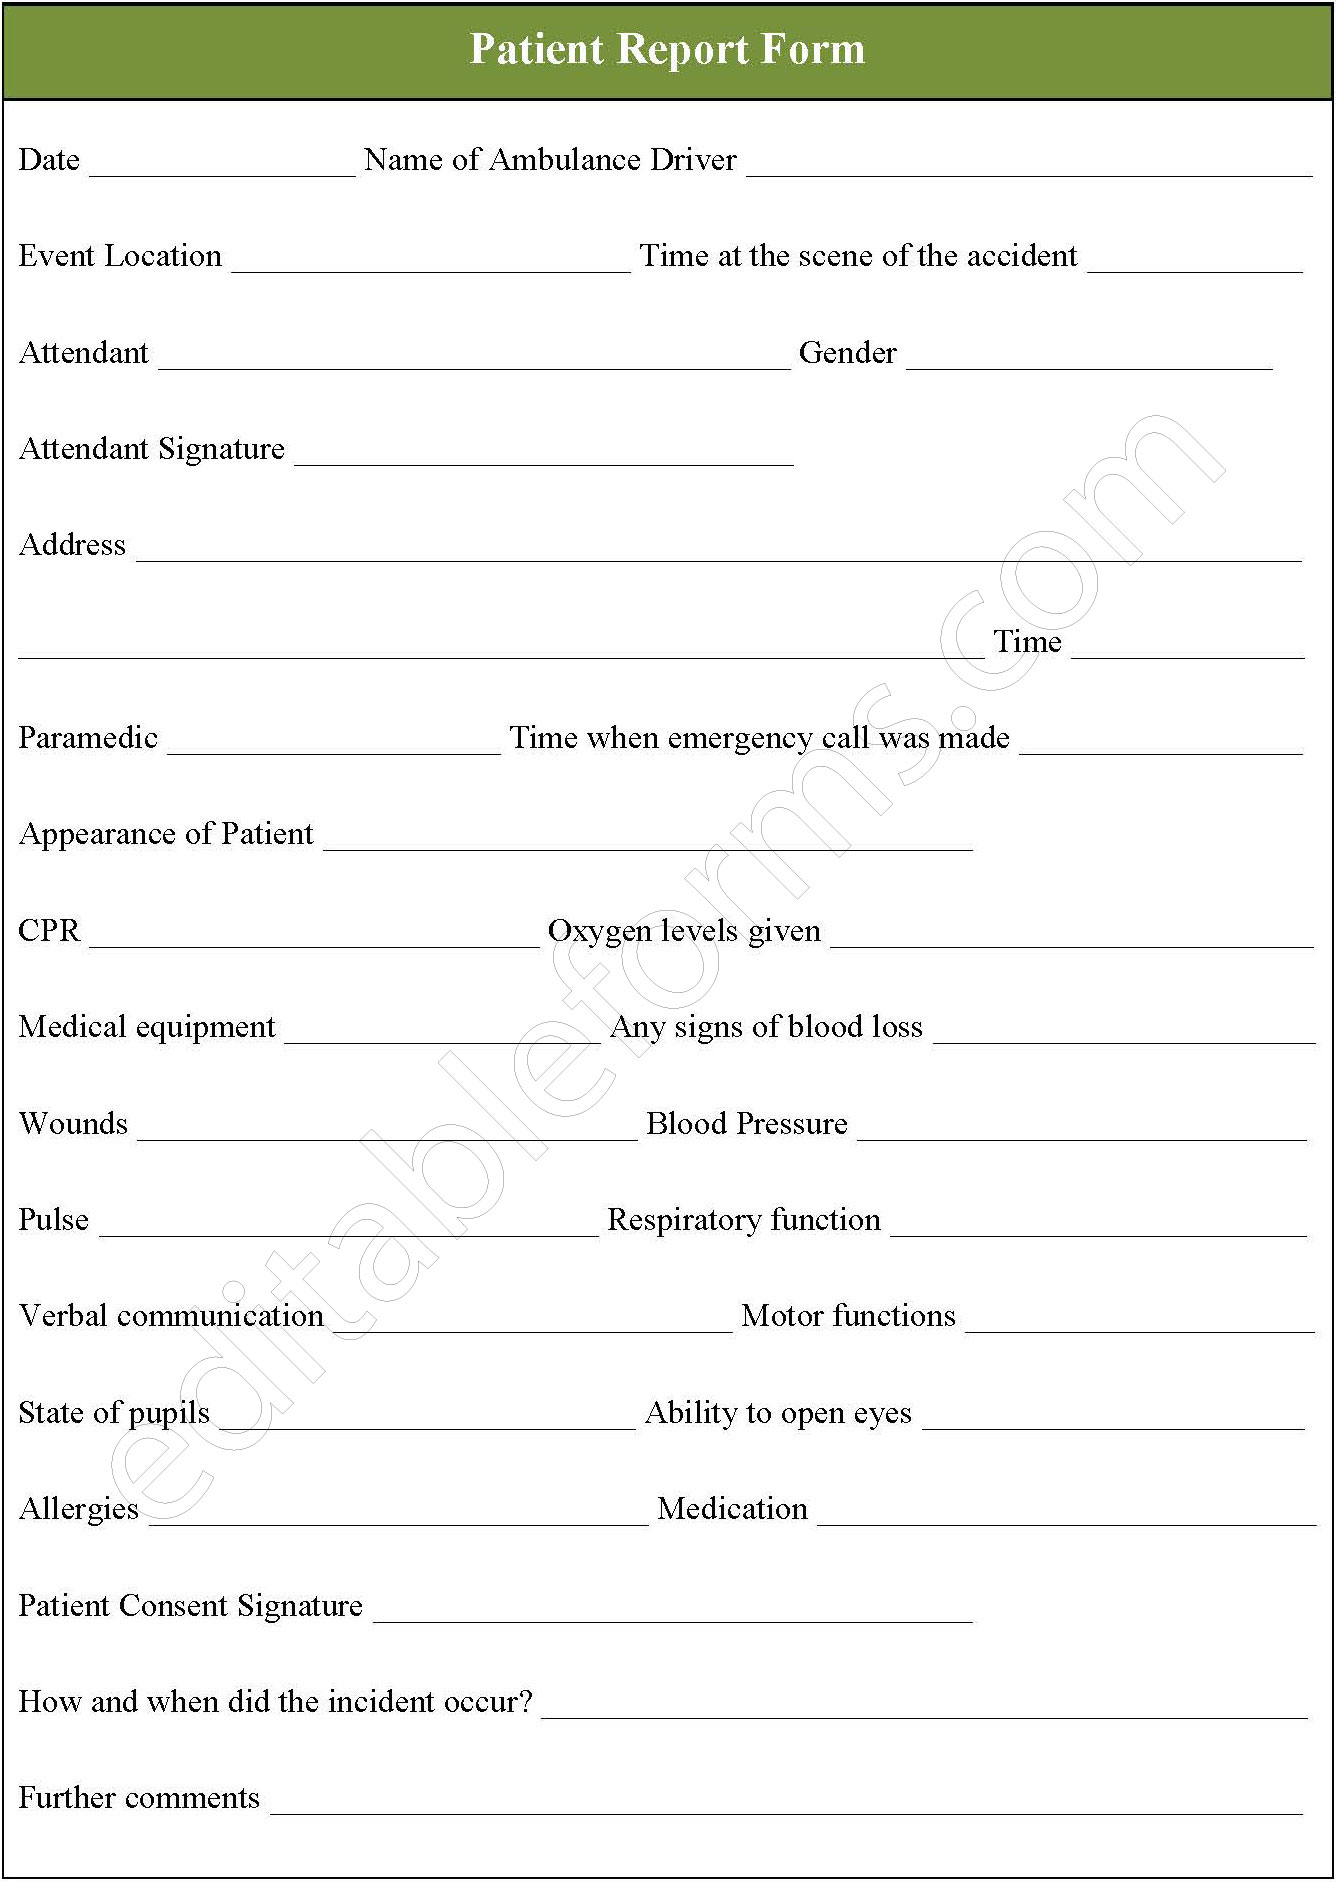 Patient Report Form